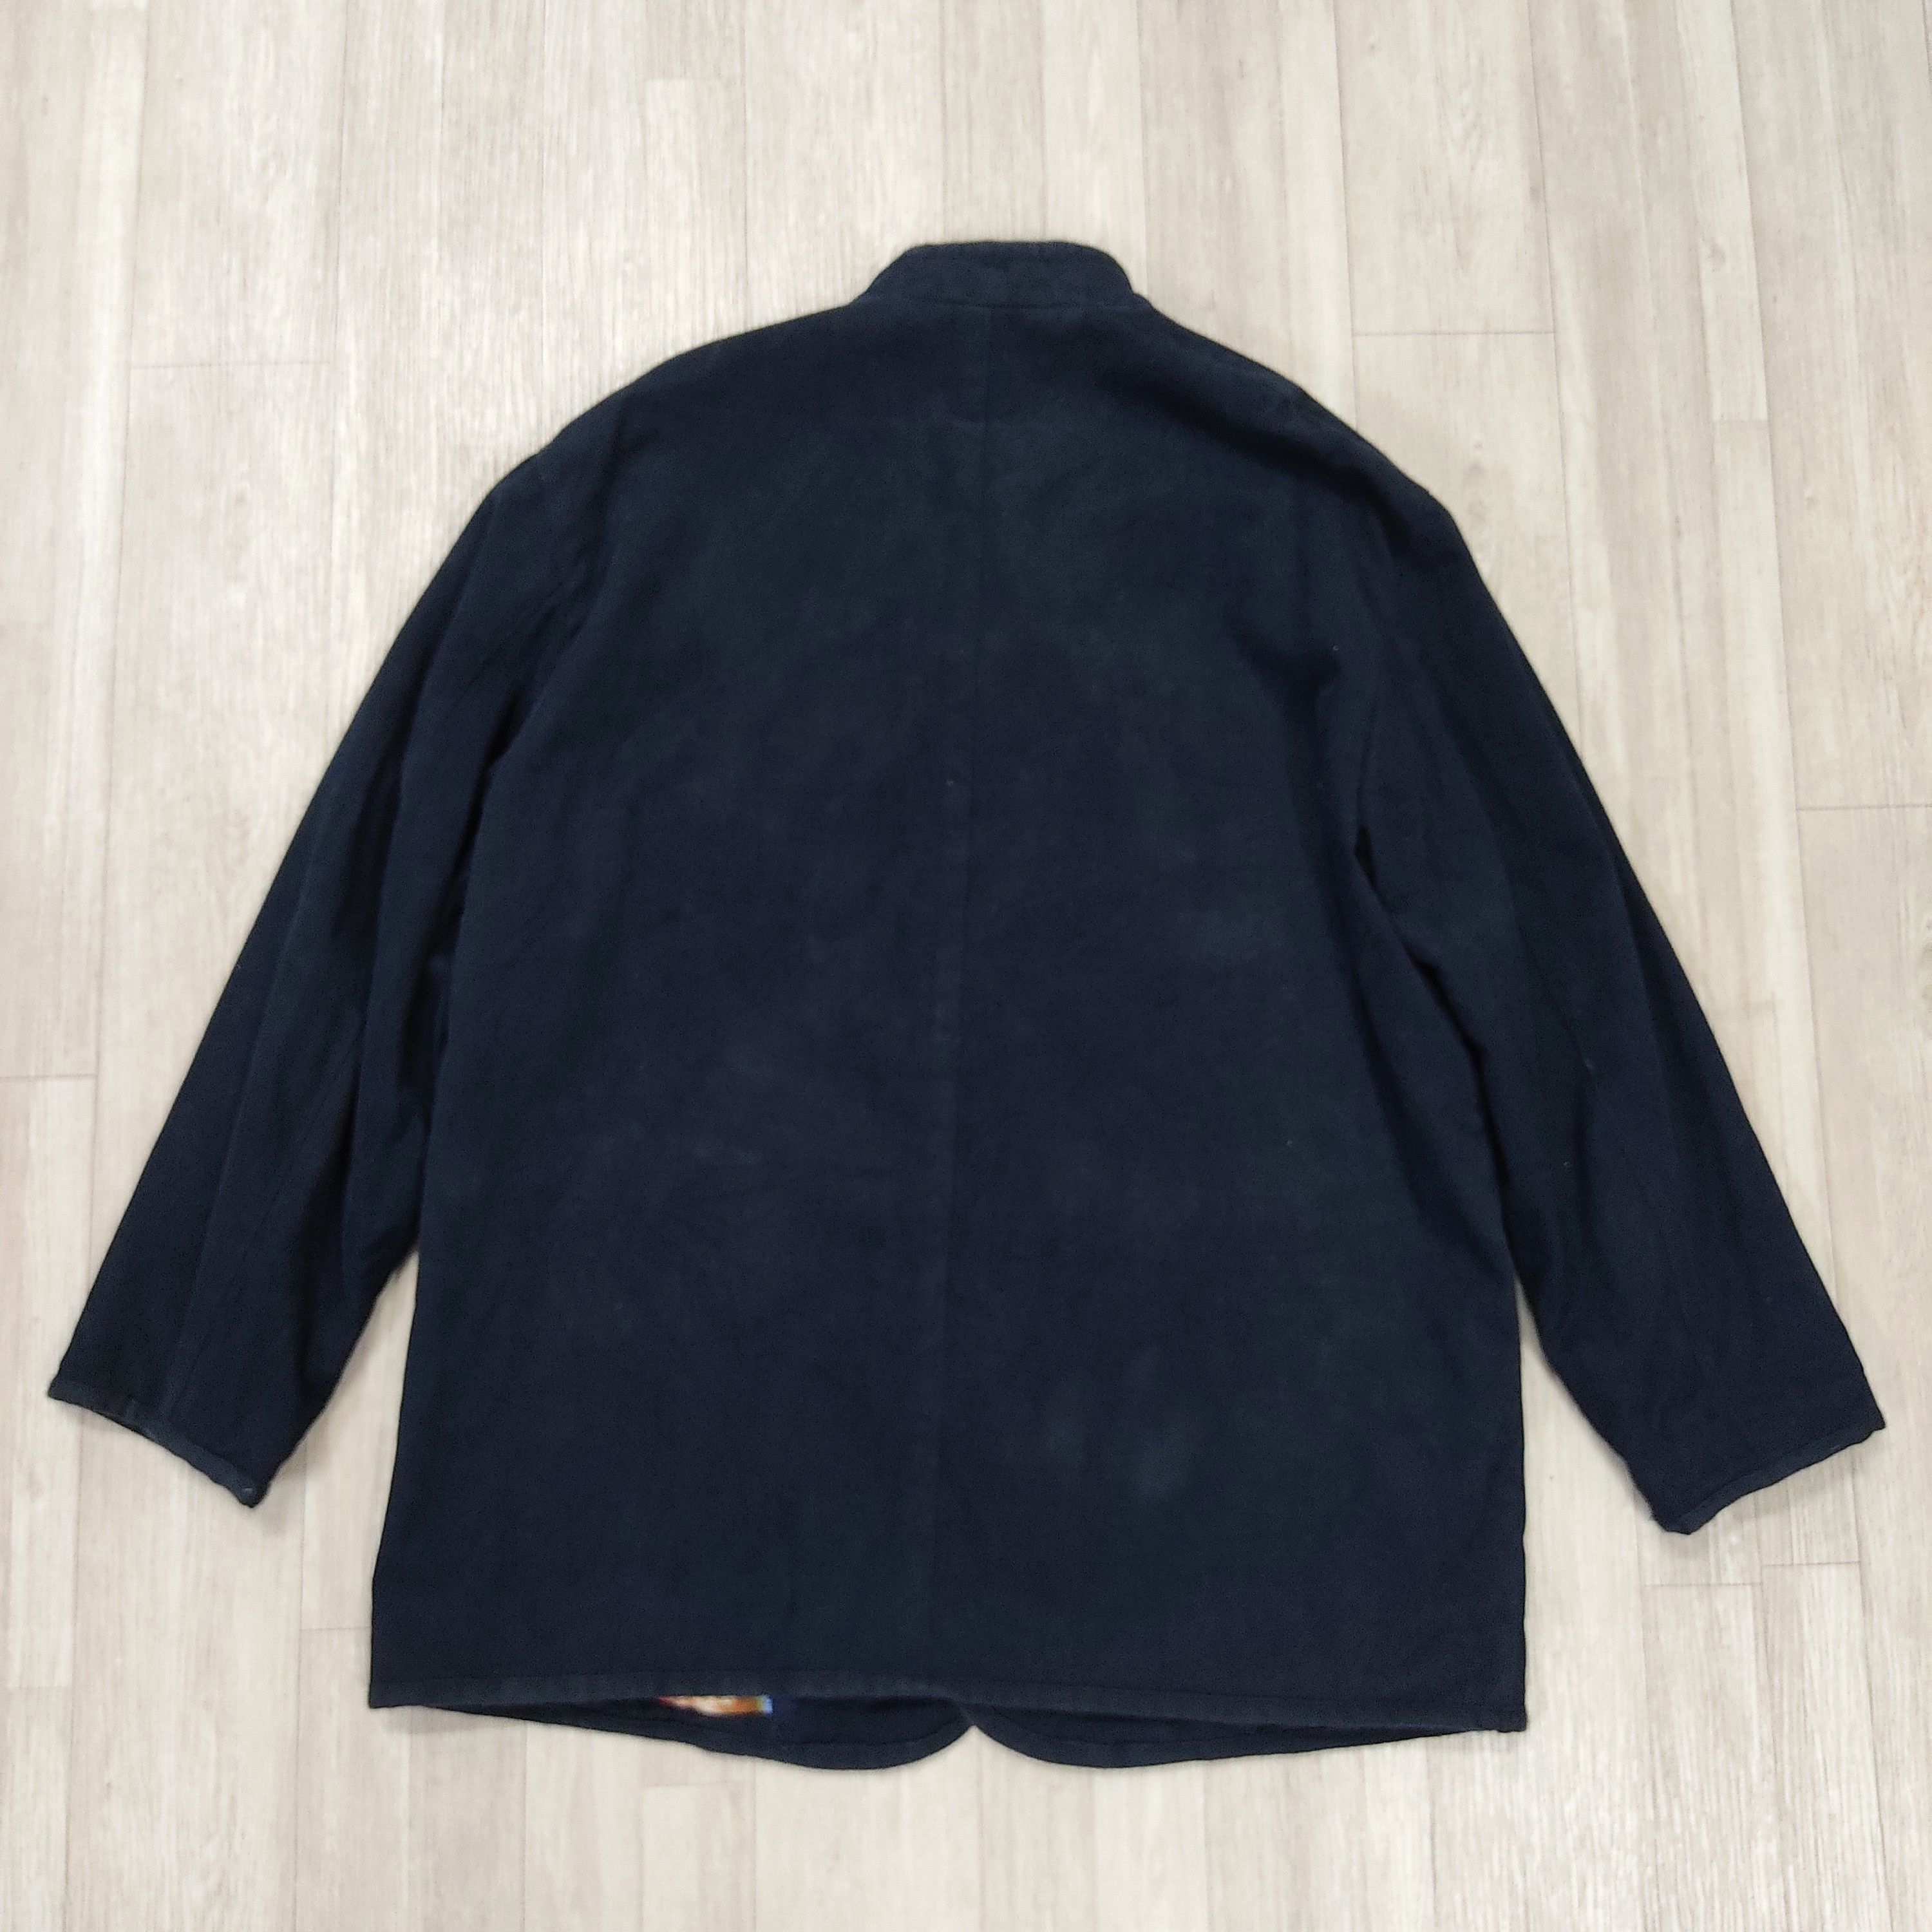 Archival Clothing - The PAPAS Mantere De Heming Navy Blue Deck Jacket - 13